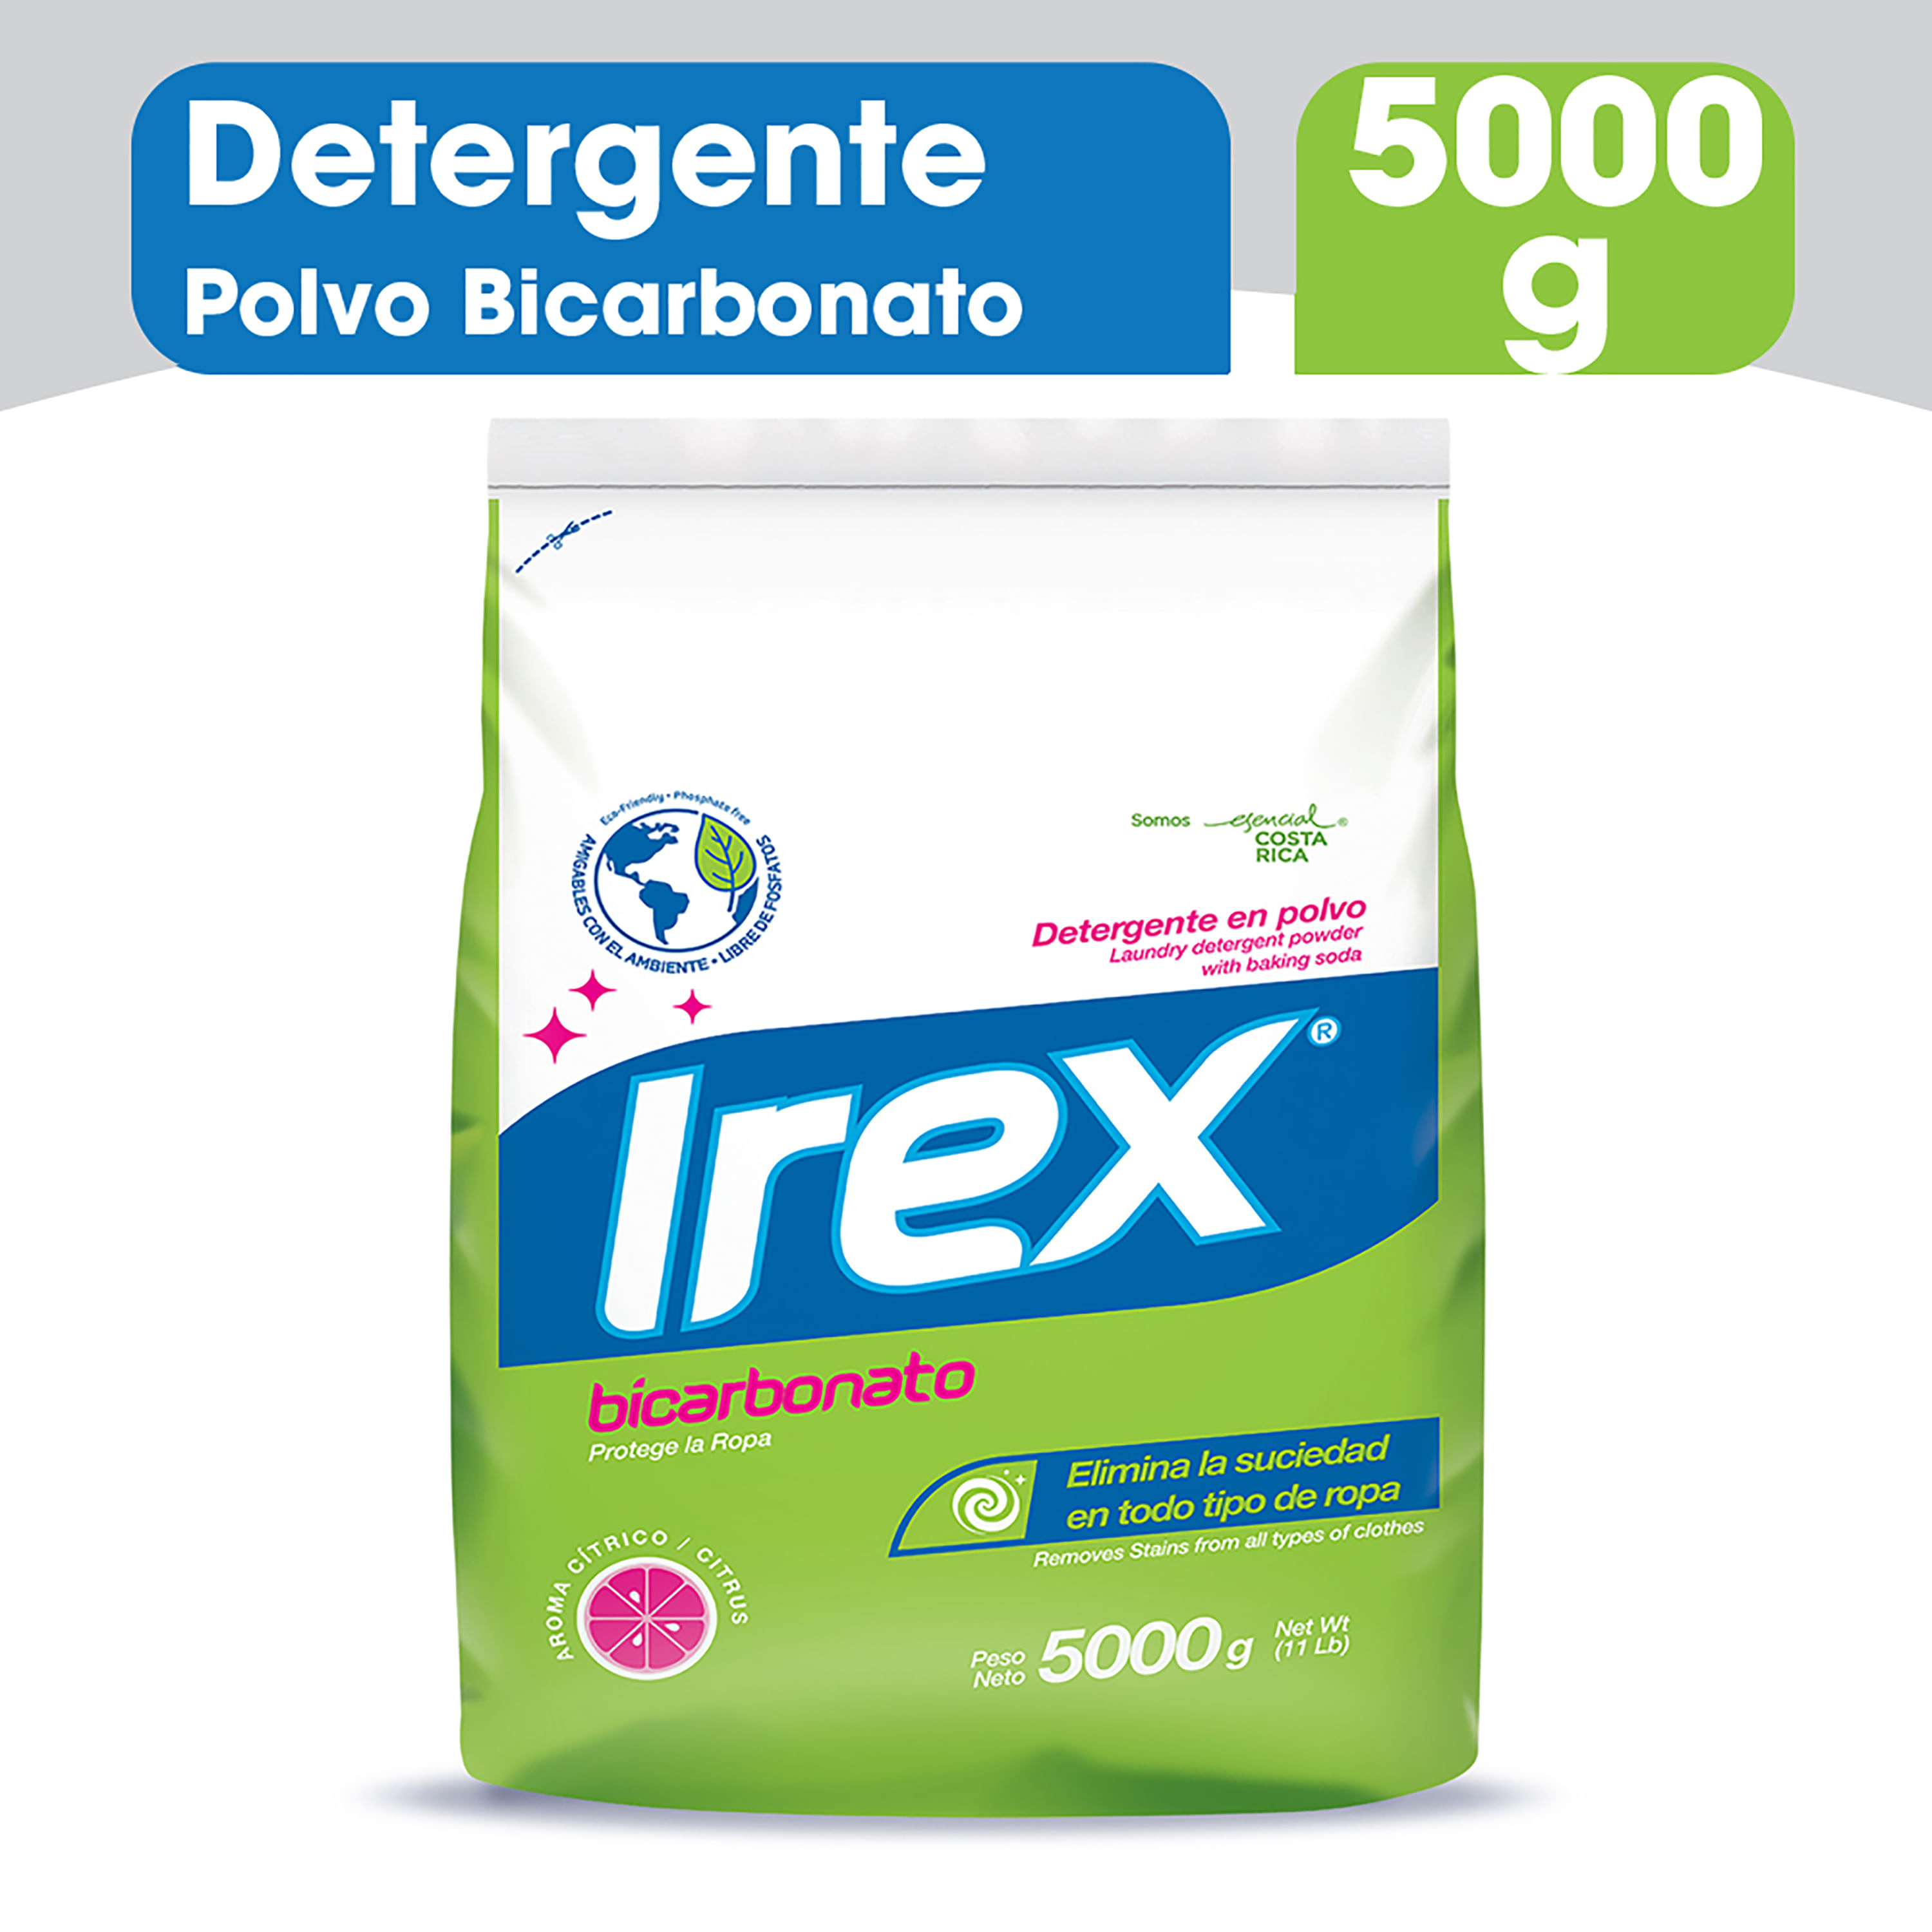 Detergente-Irex-Bicarbonato-5000gr-1-33110